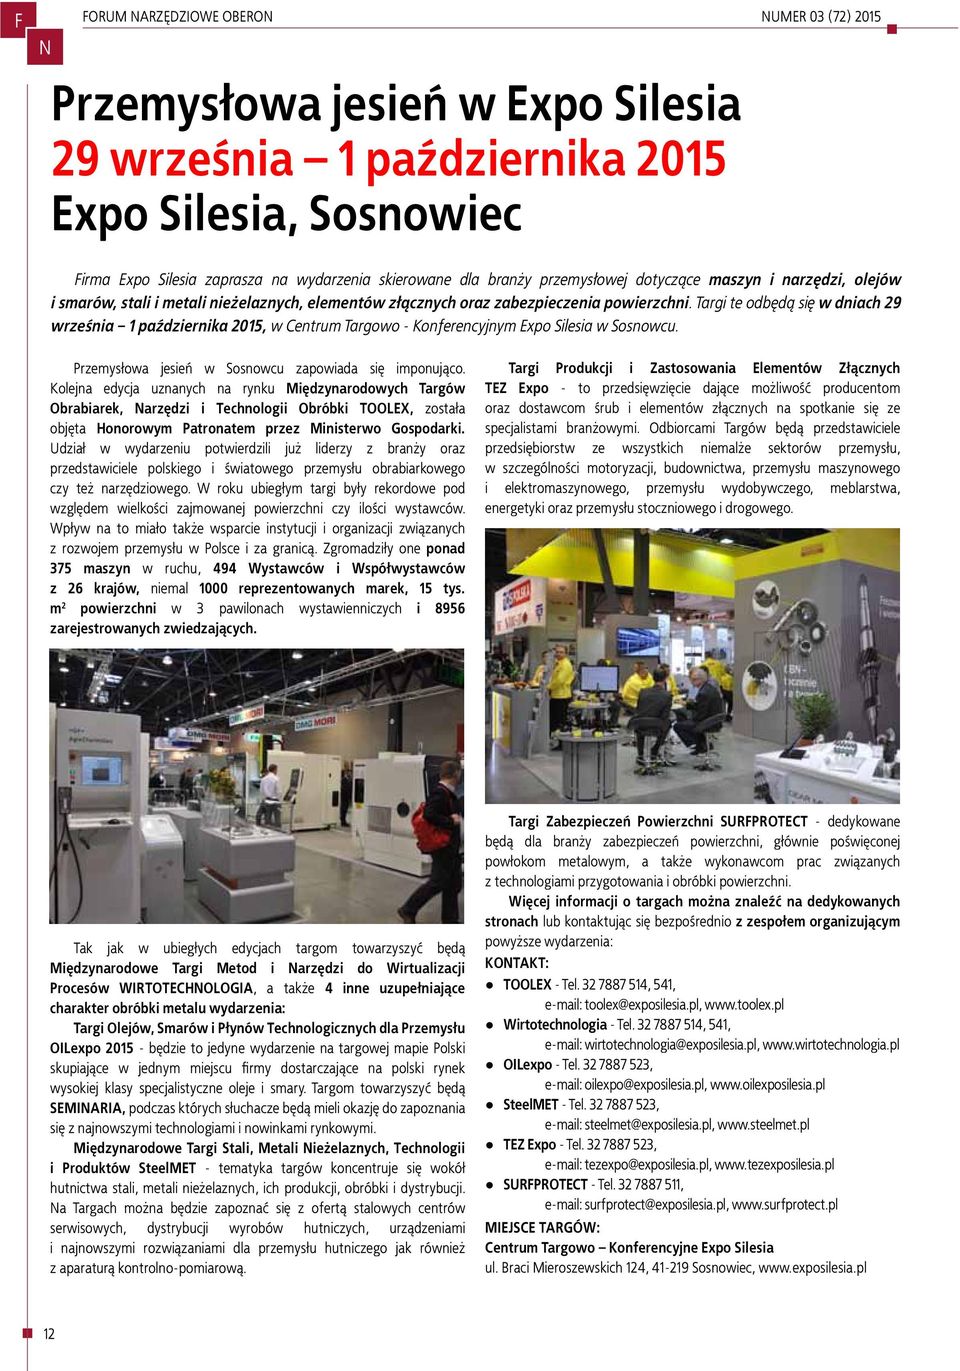 Targi te odbędą się w dniach 29 września 1 października 2015, w Centrum Targowo - Konferencyjnym Expo Silesia w Sosnowcu. Przemysłowa jesień w Sosnowcu zapowiada się imponująco.